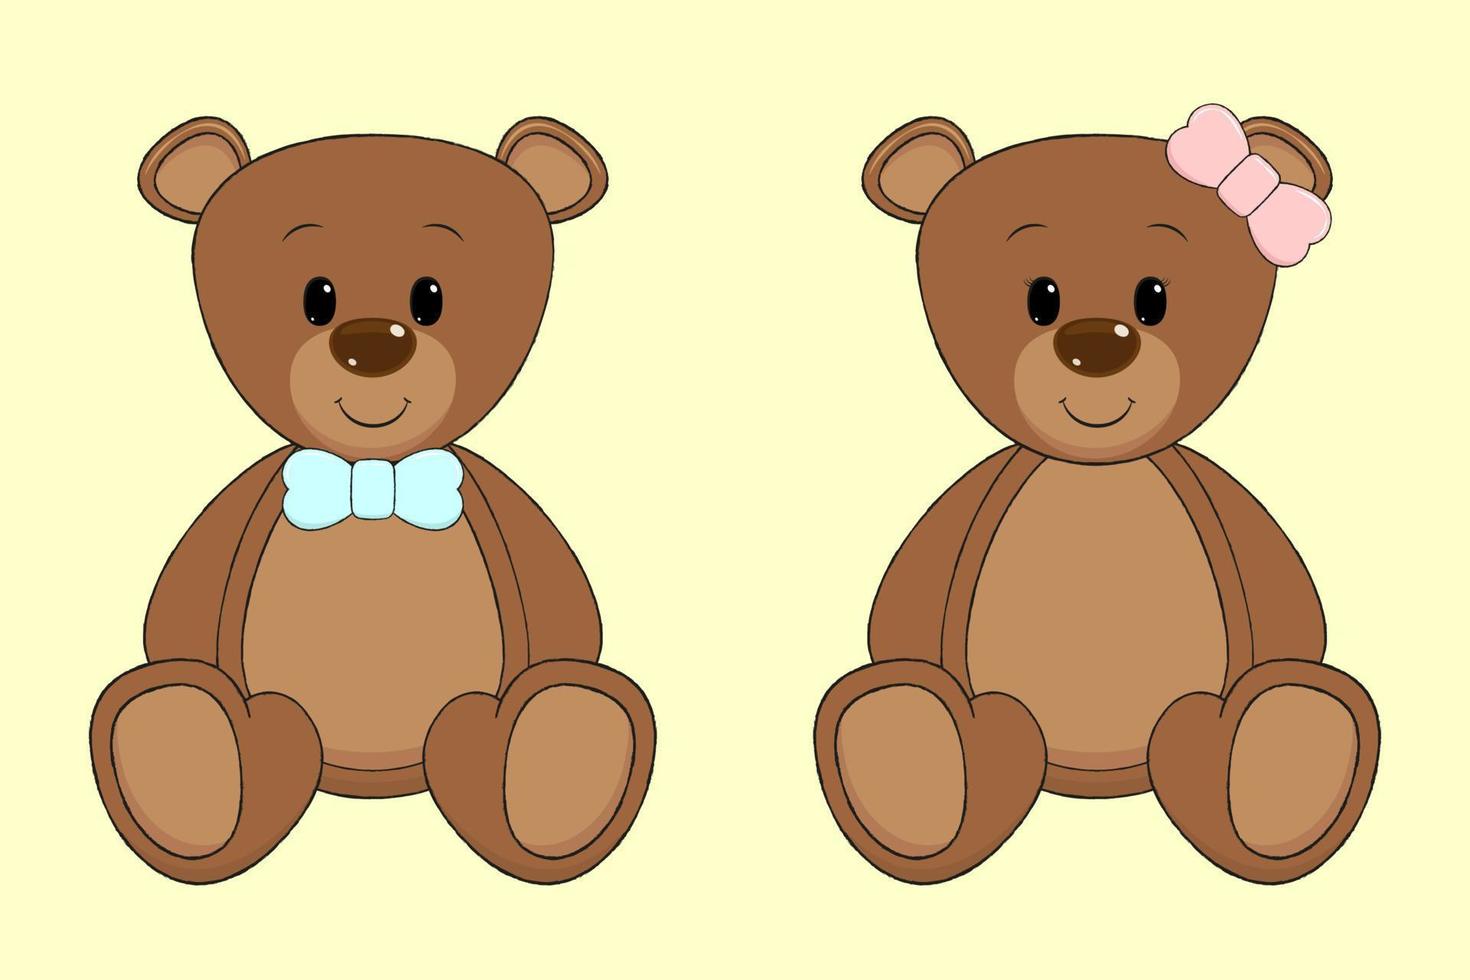 Cartoon teddy bears. vector